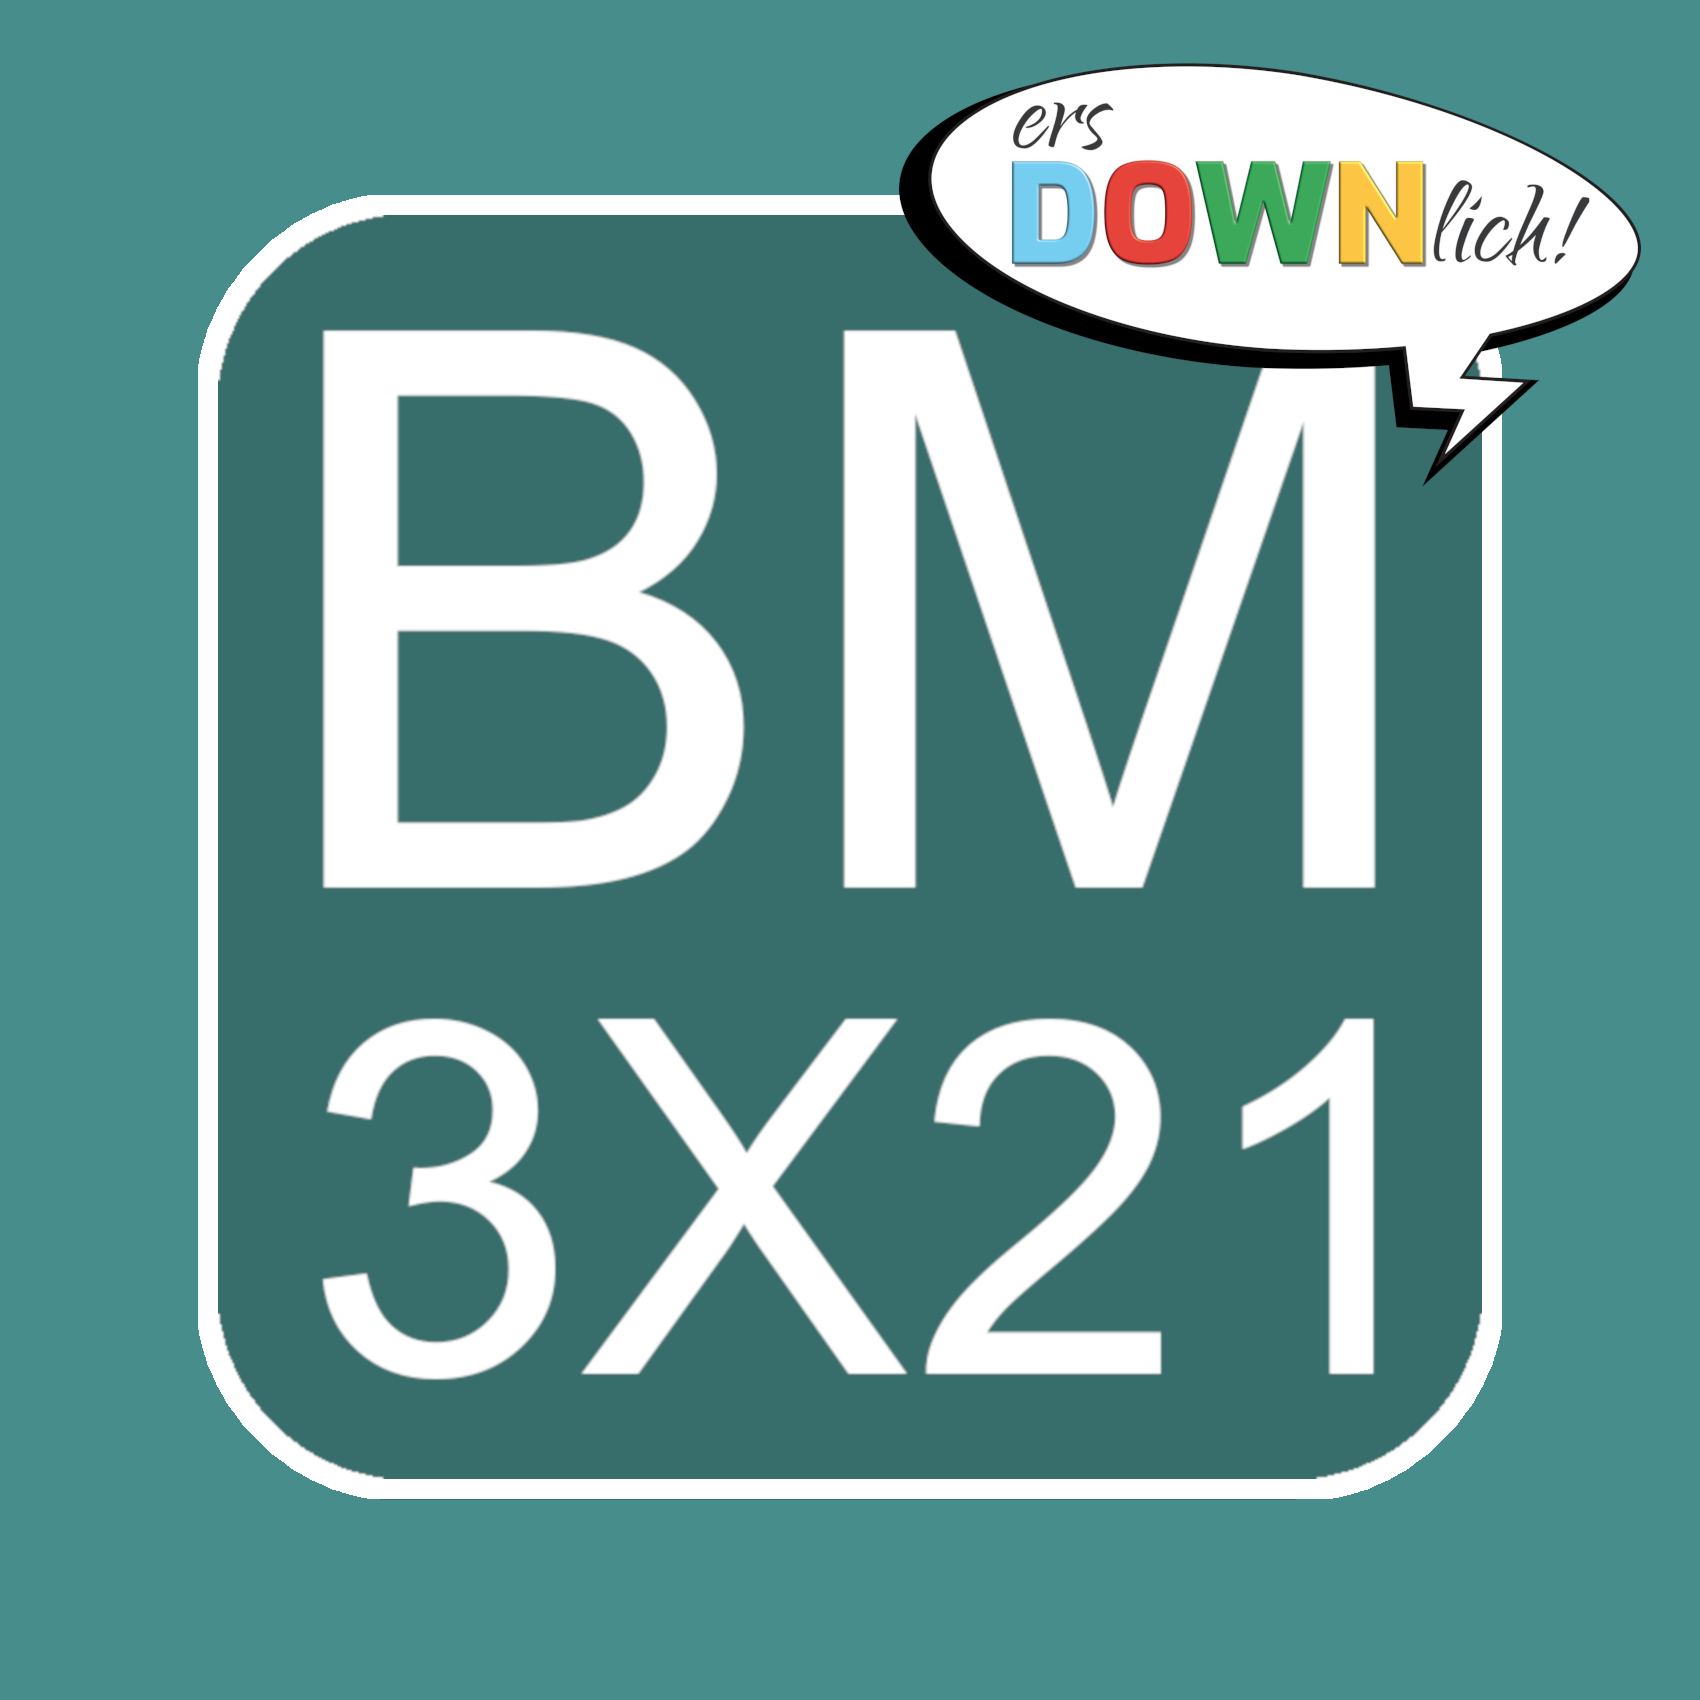 Das Bild zeigt das Logo der Down-Syndrom-Elterninitiative BM 3X21: ein blaugrünes Quadrat mit abgerundeten Ecken. Darauf steht in der oberen Zeile in weißer Schrift „BM“ und darunter „3X21“. Rechts oben ist eine Sprechblase mit dem Logo von ersDOWNlich!